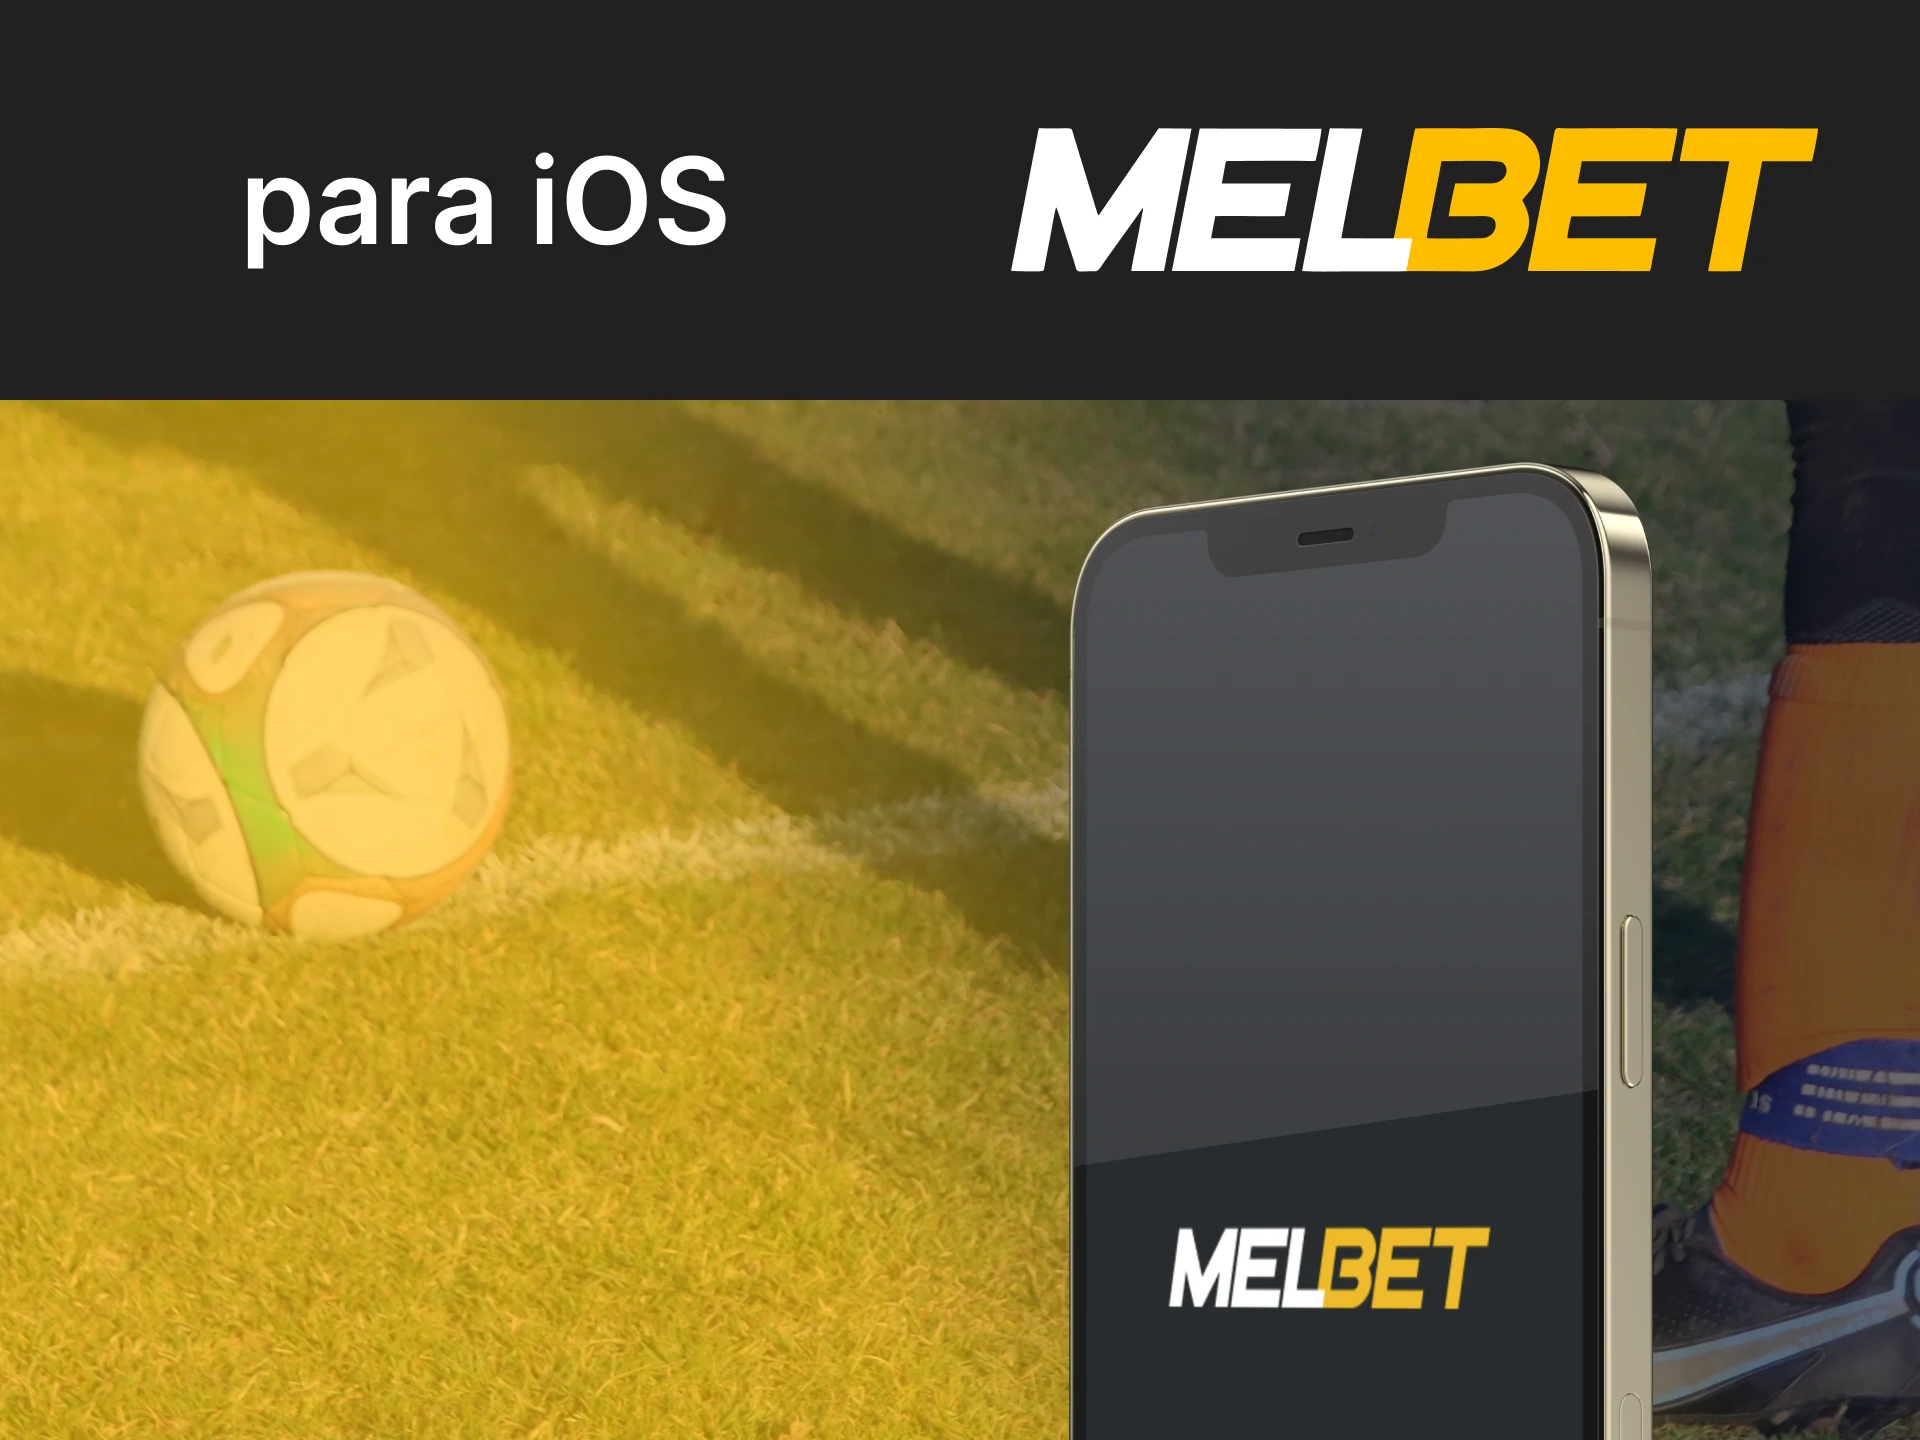 Você pode baixar o aplicativo Melbet para dispositivos iOS.